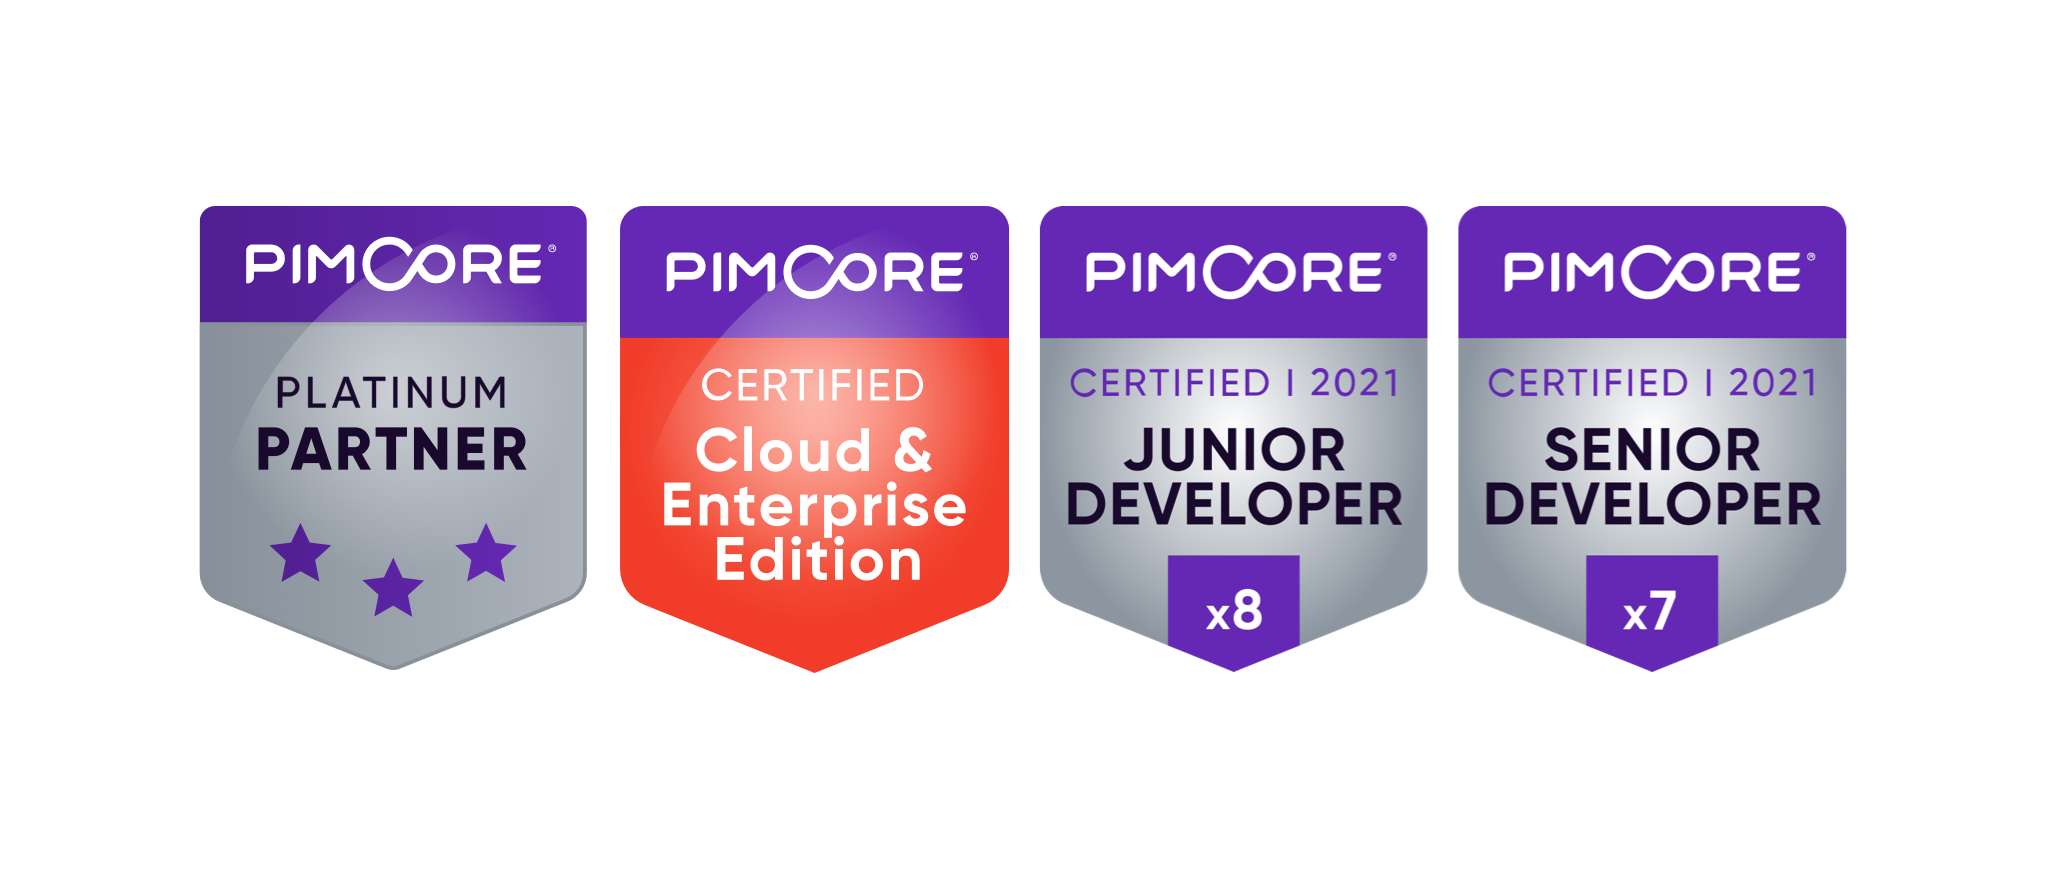 Signets von Pimcore-Zertifizierungen, welche twocream hat (Pimcore Platinum Partner, Certified Cloud & Enterprise Edition, Certified Junior Developer, Certified Senior Developer).